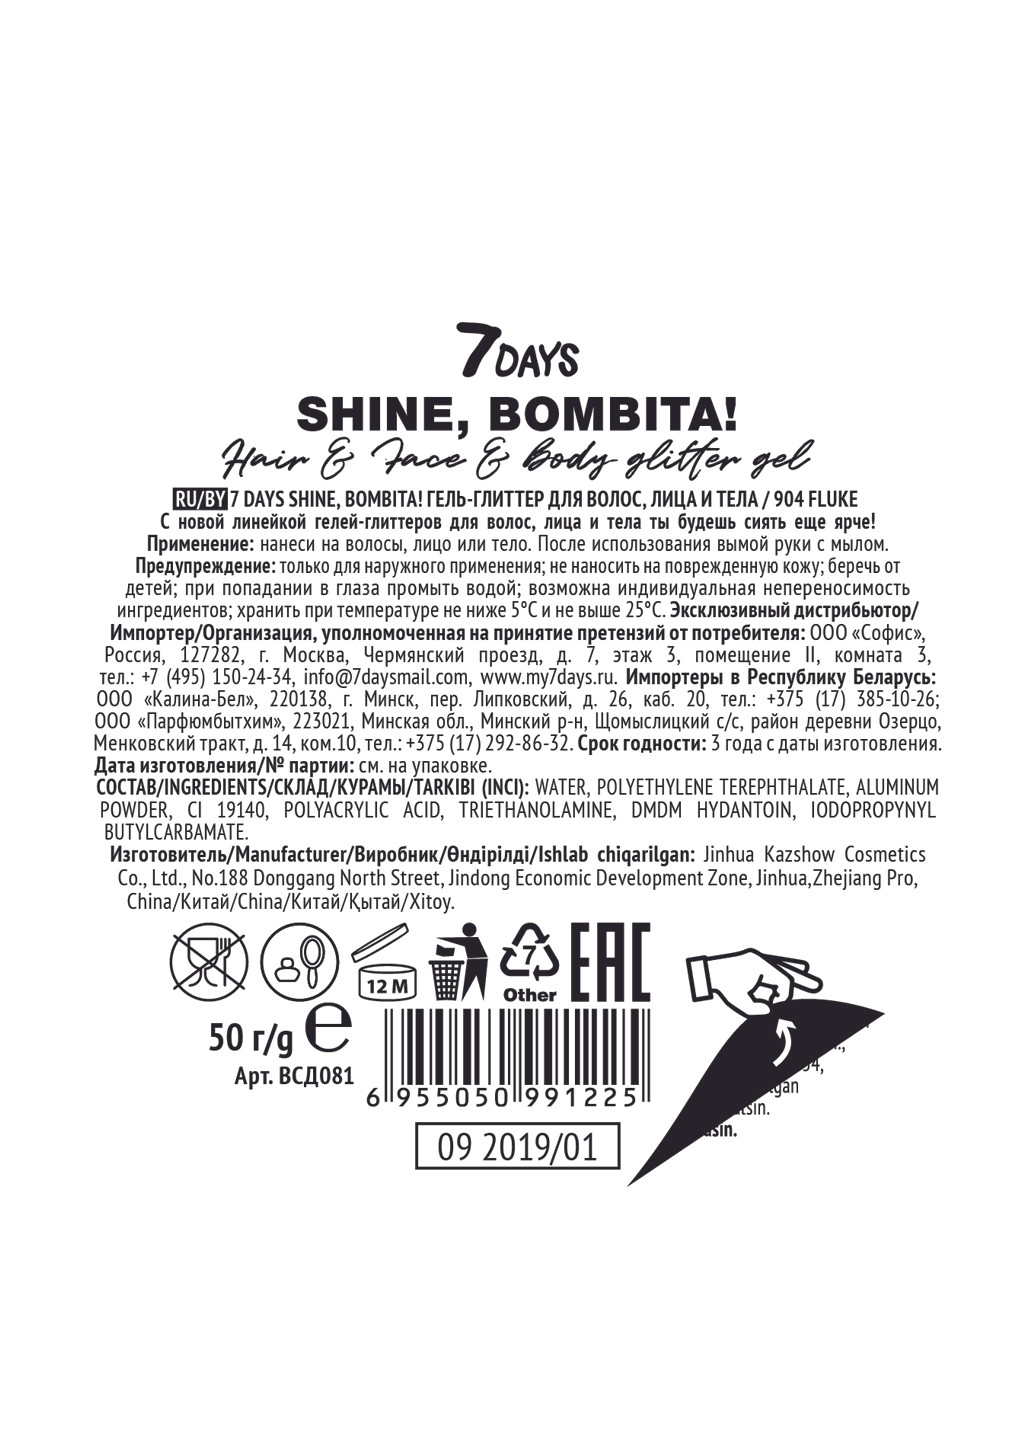 Гель-глиттер для волос, лица и тела SHINE, BOMBITA! с шиммерами и блестками / 904 Fluke, 50 г 7 days (197273645)